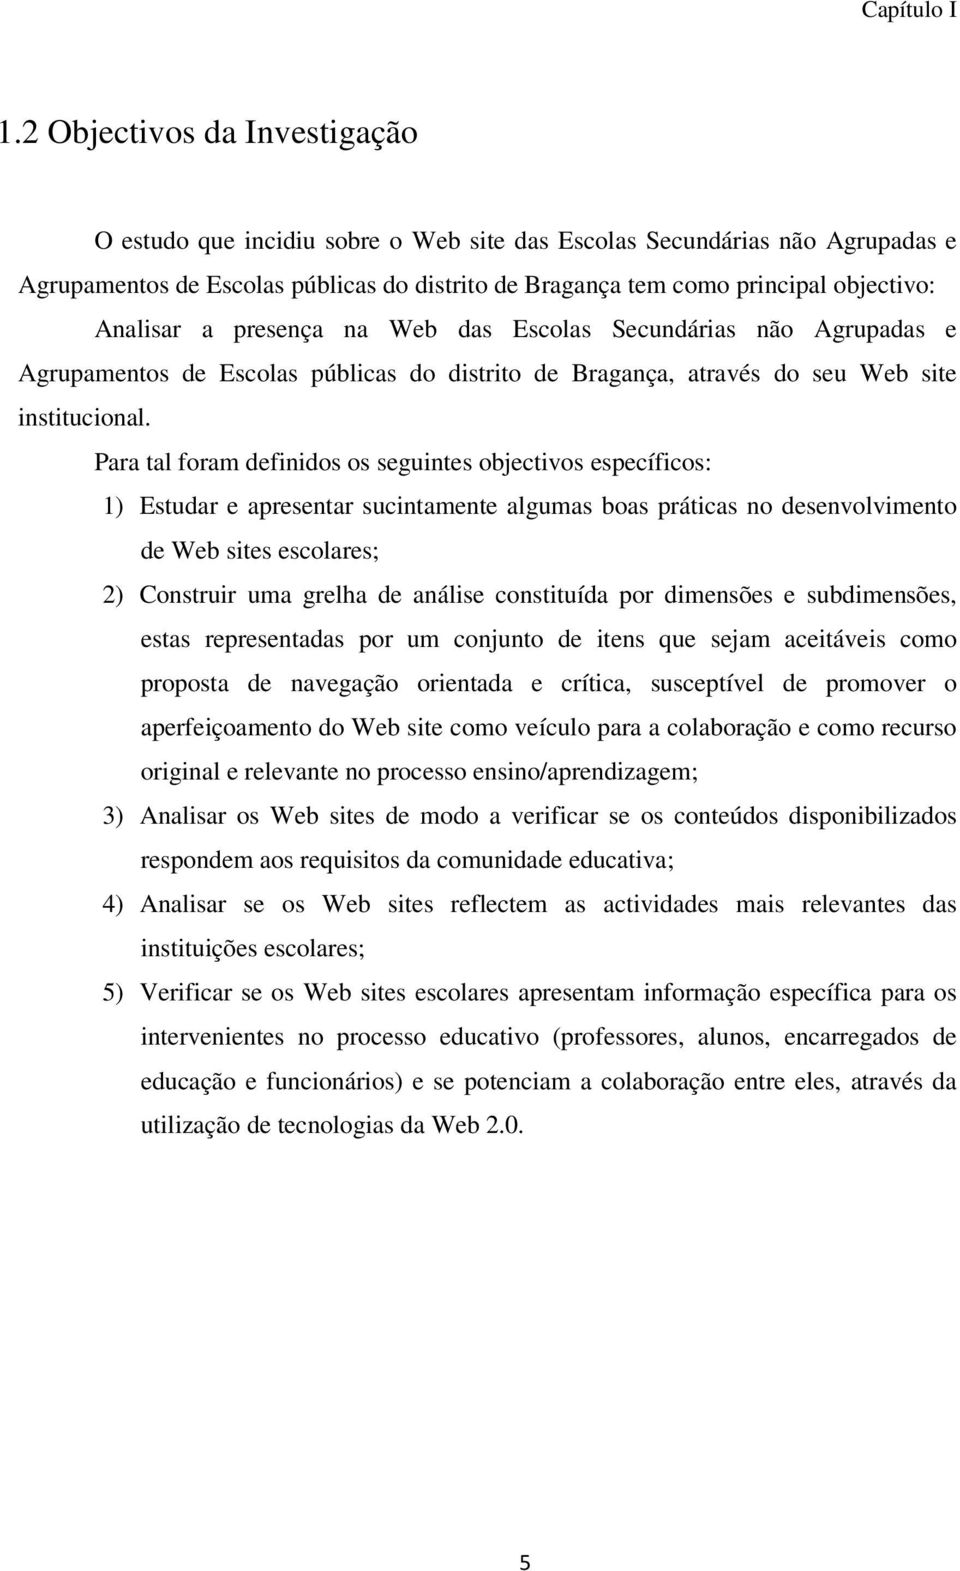 Analisar a presença na Web das Escolas Secundárias não Agrupadas e Agrupamentos de Escolas públicas do distrito de Bragança, através do seu Web site institucional.